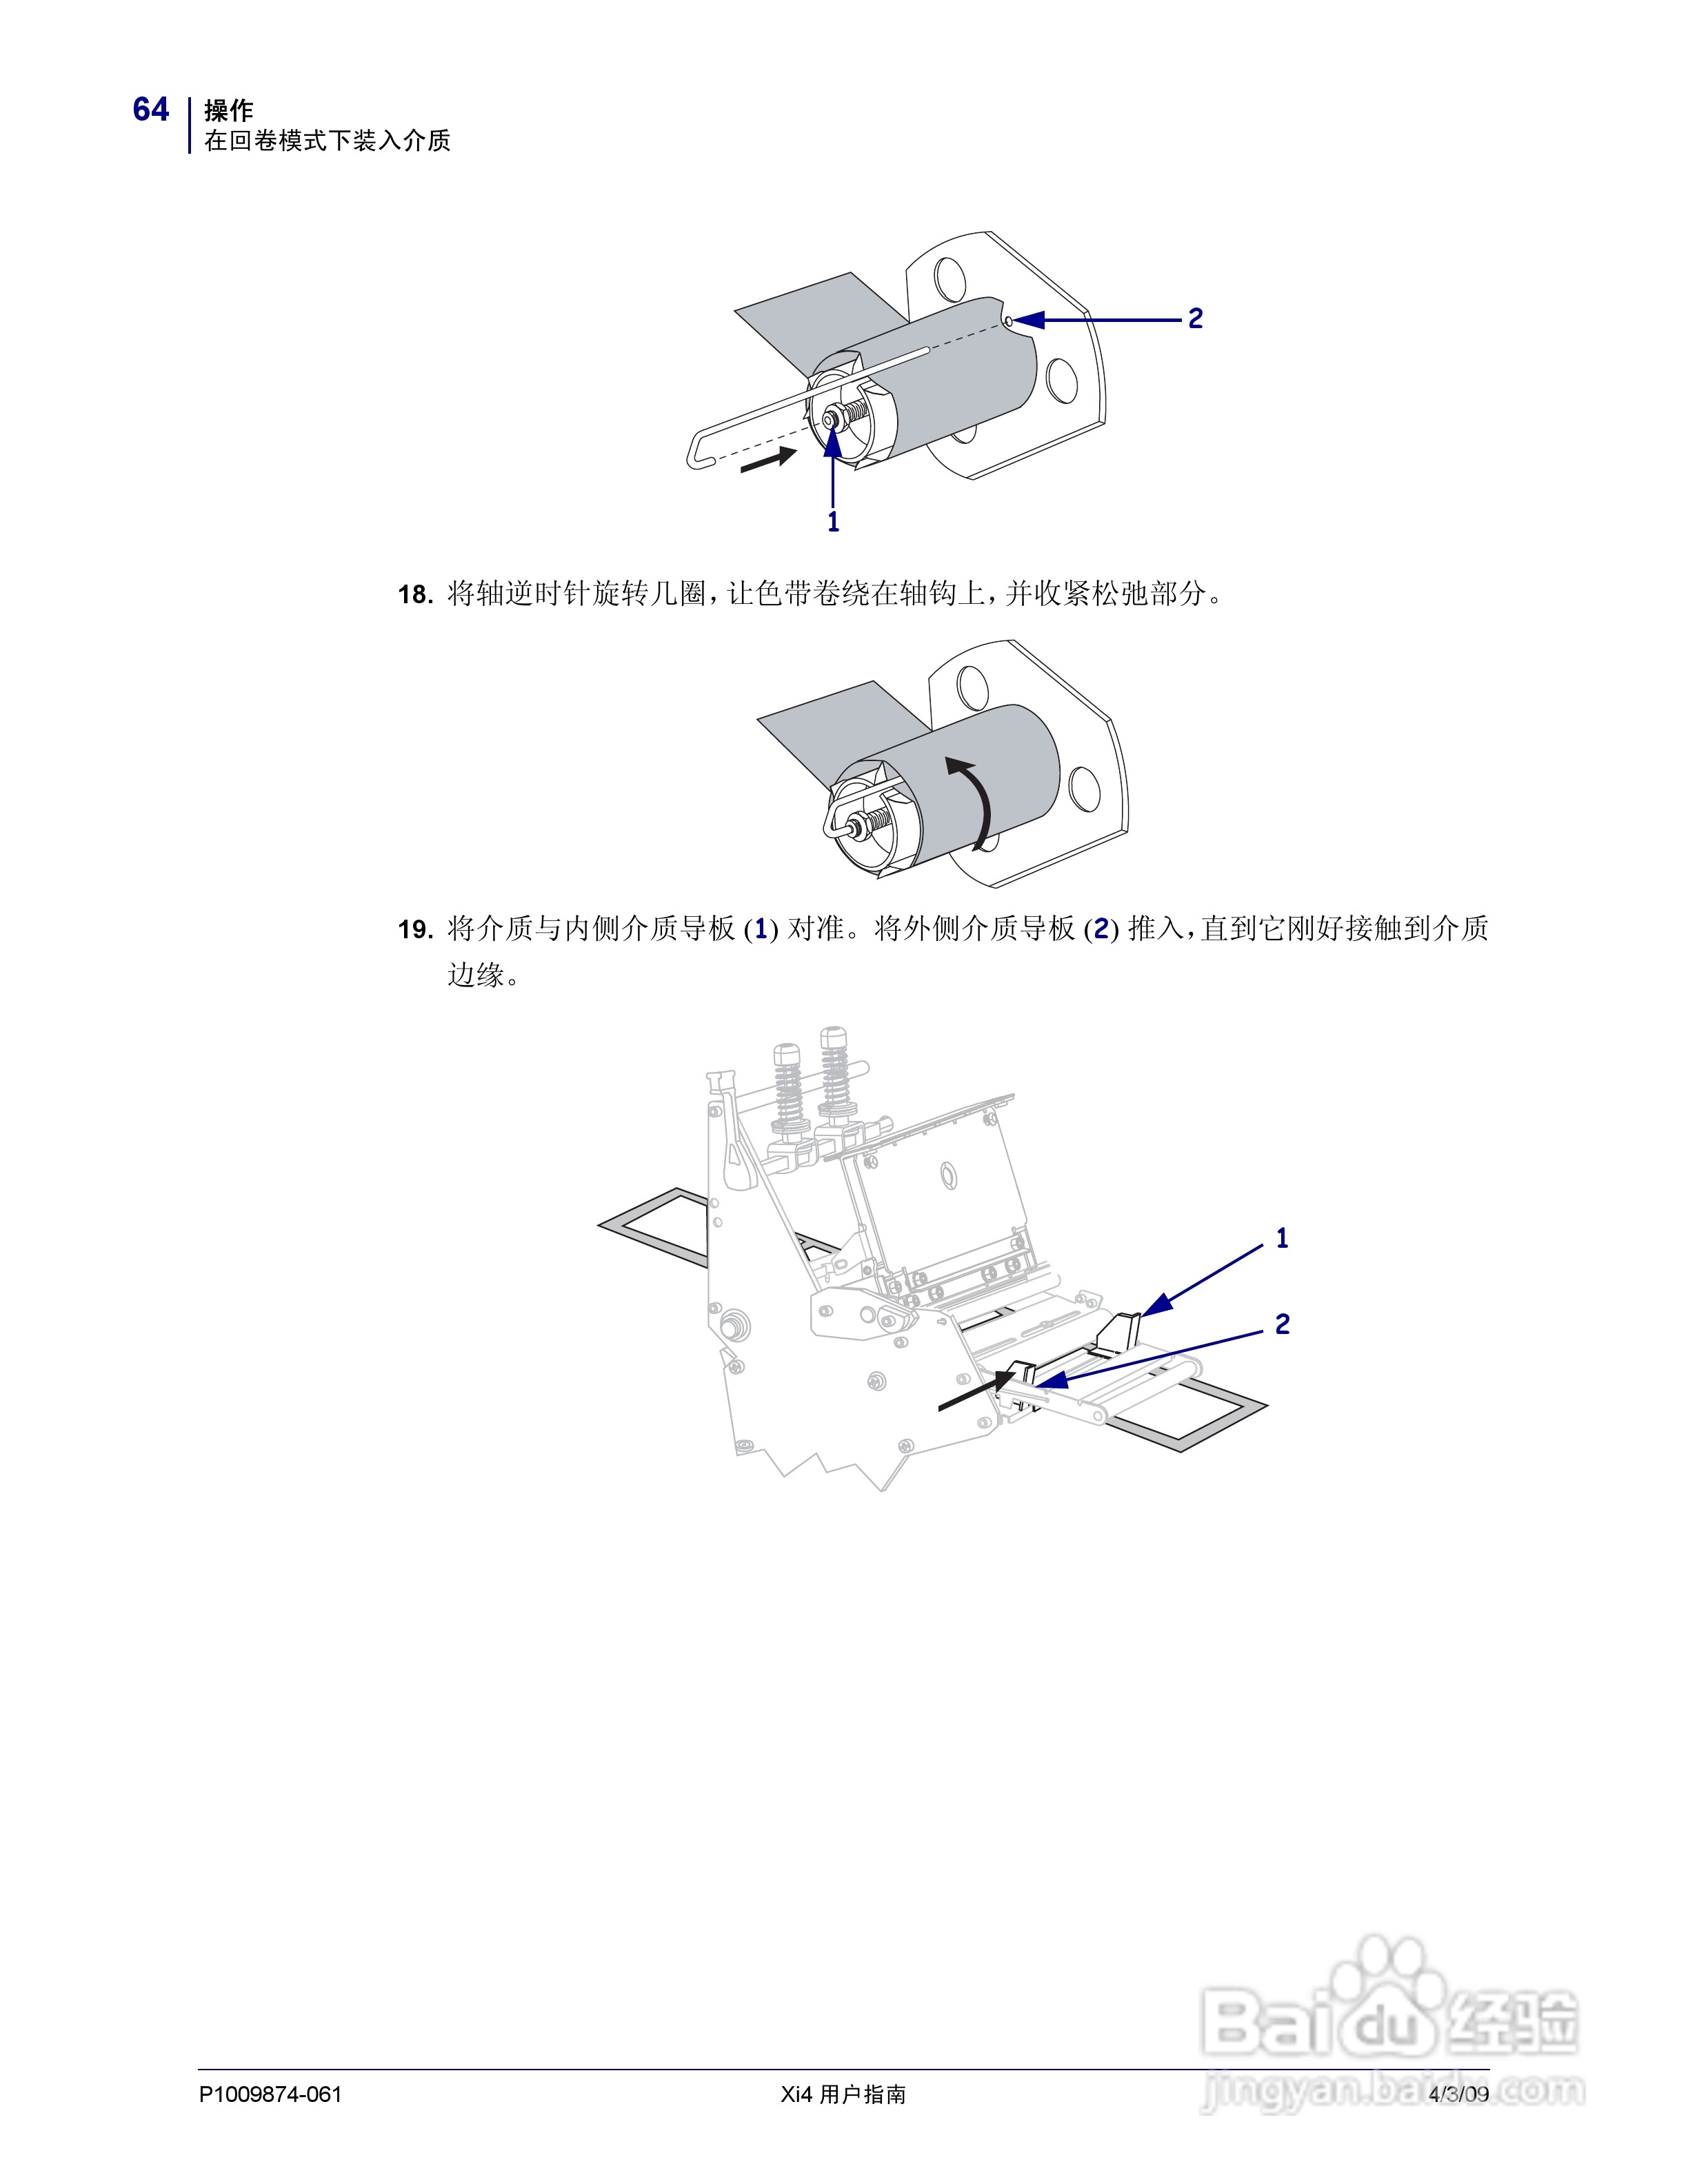 江苏某通讯公司购买斑马ZT610 600DPI打印机